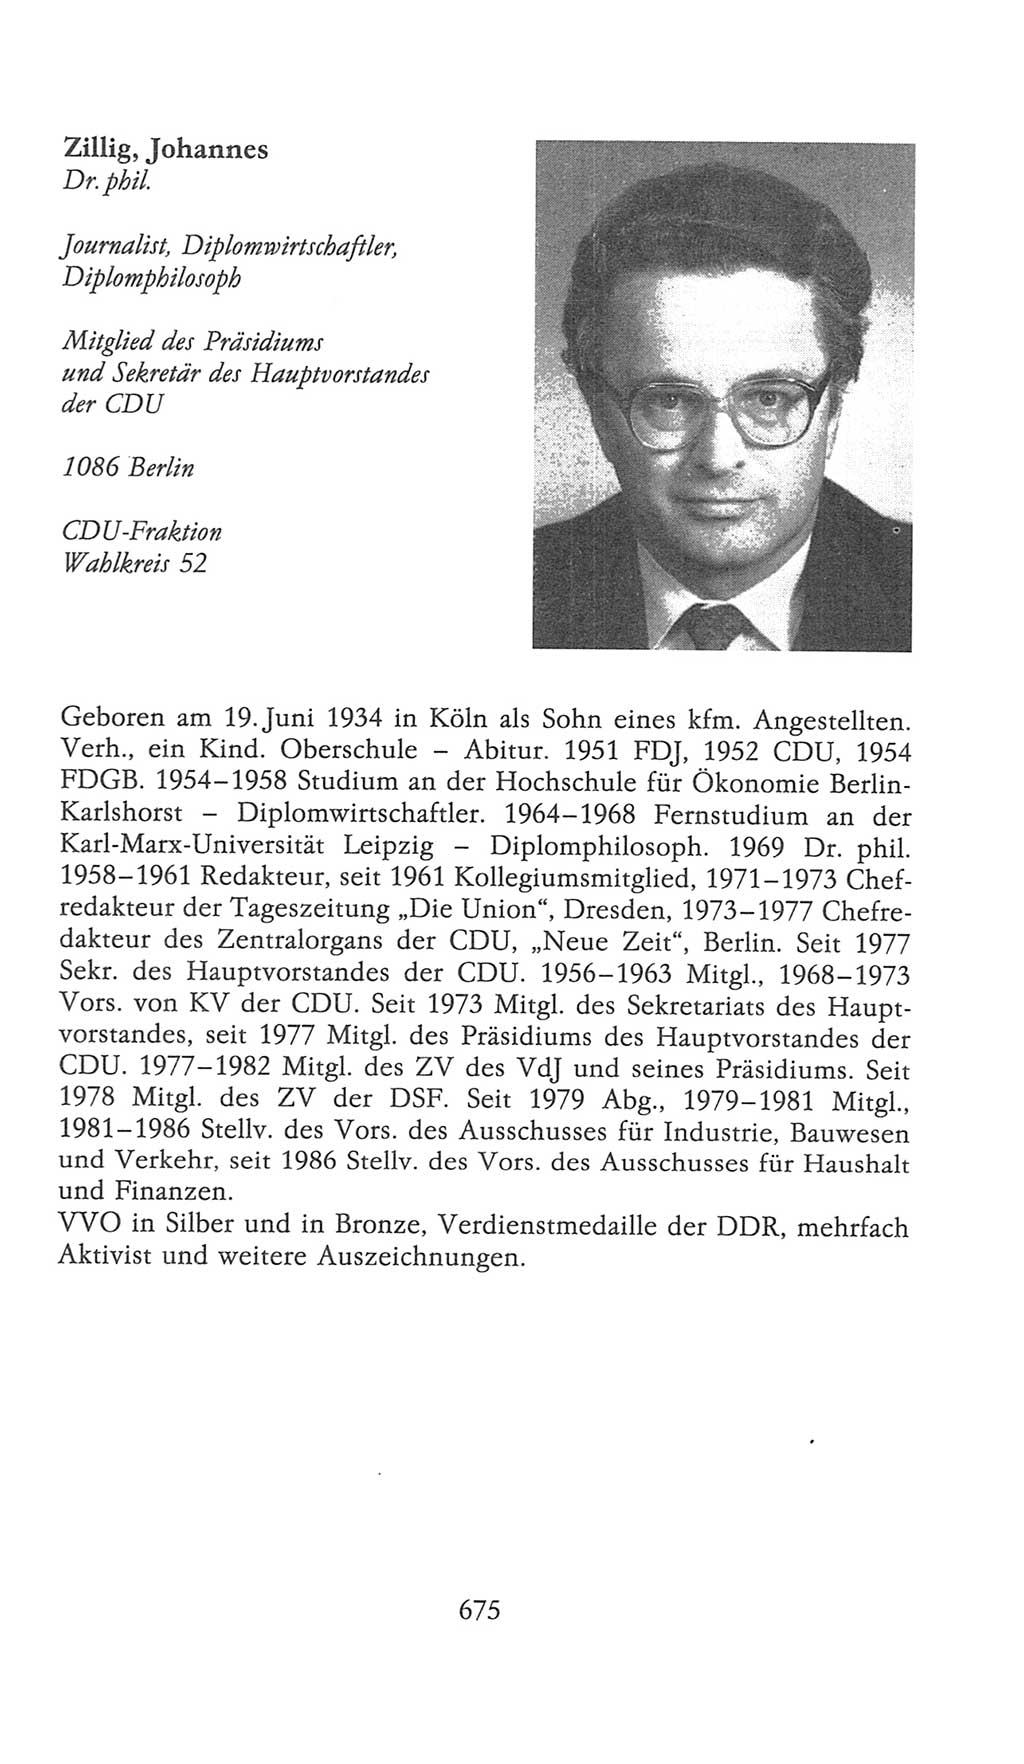 Volkskammer (VK) der Deutschen Demokratischen Republik (DDR), 9. Wahlperiode 1986-1990, Seite 675 (VK. DDR 9. WP. 1986-1990, S. 675)